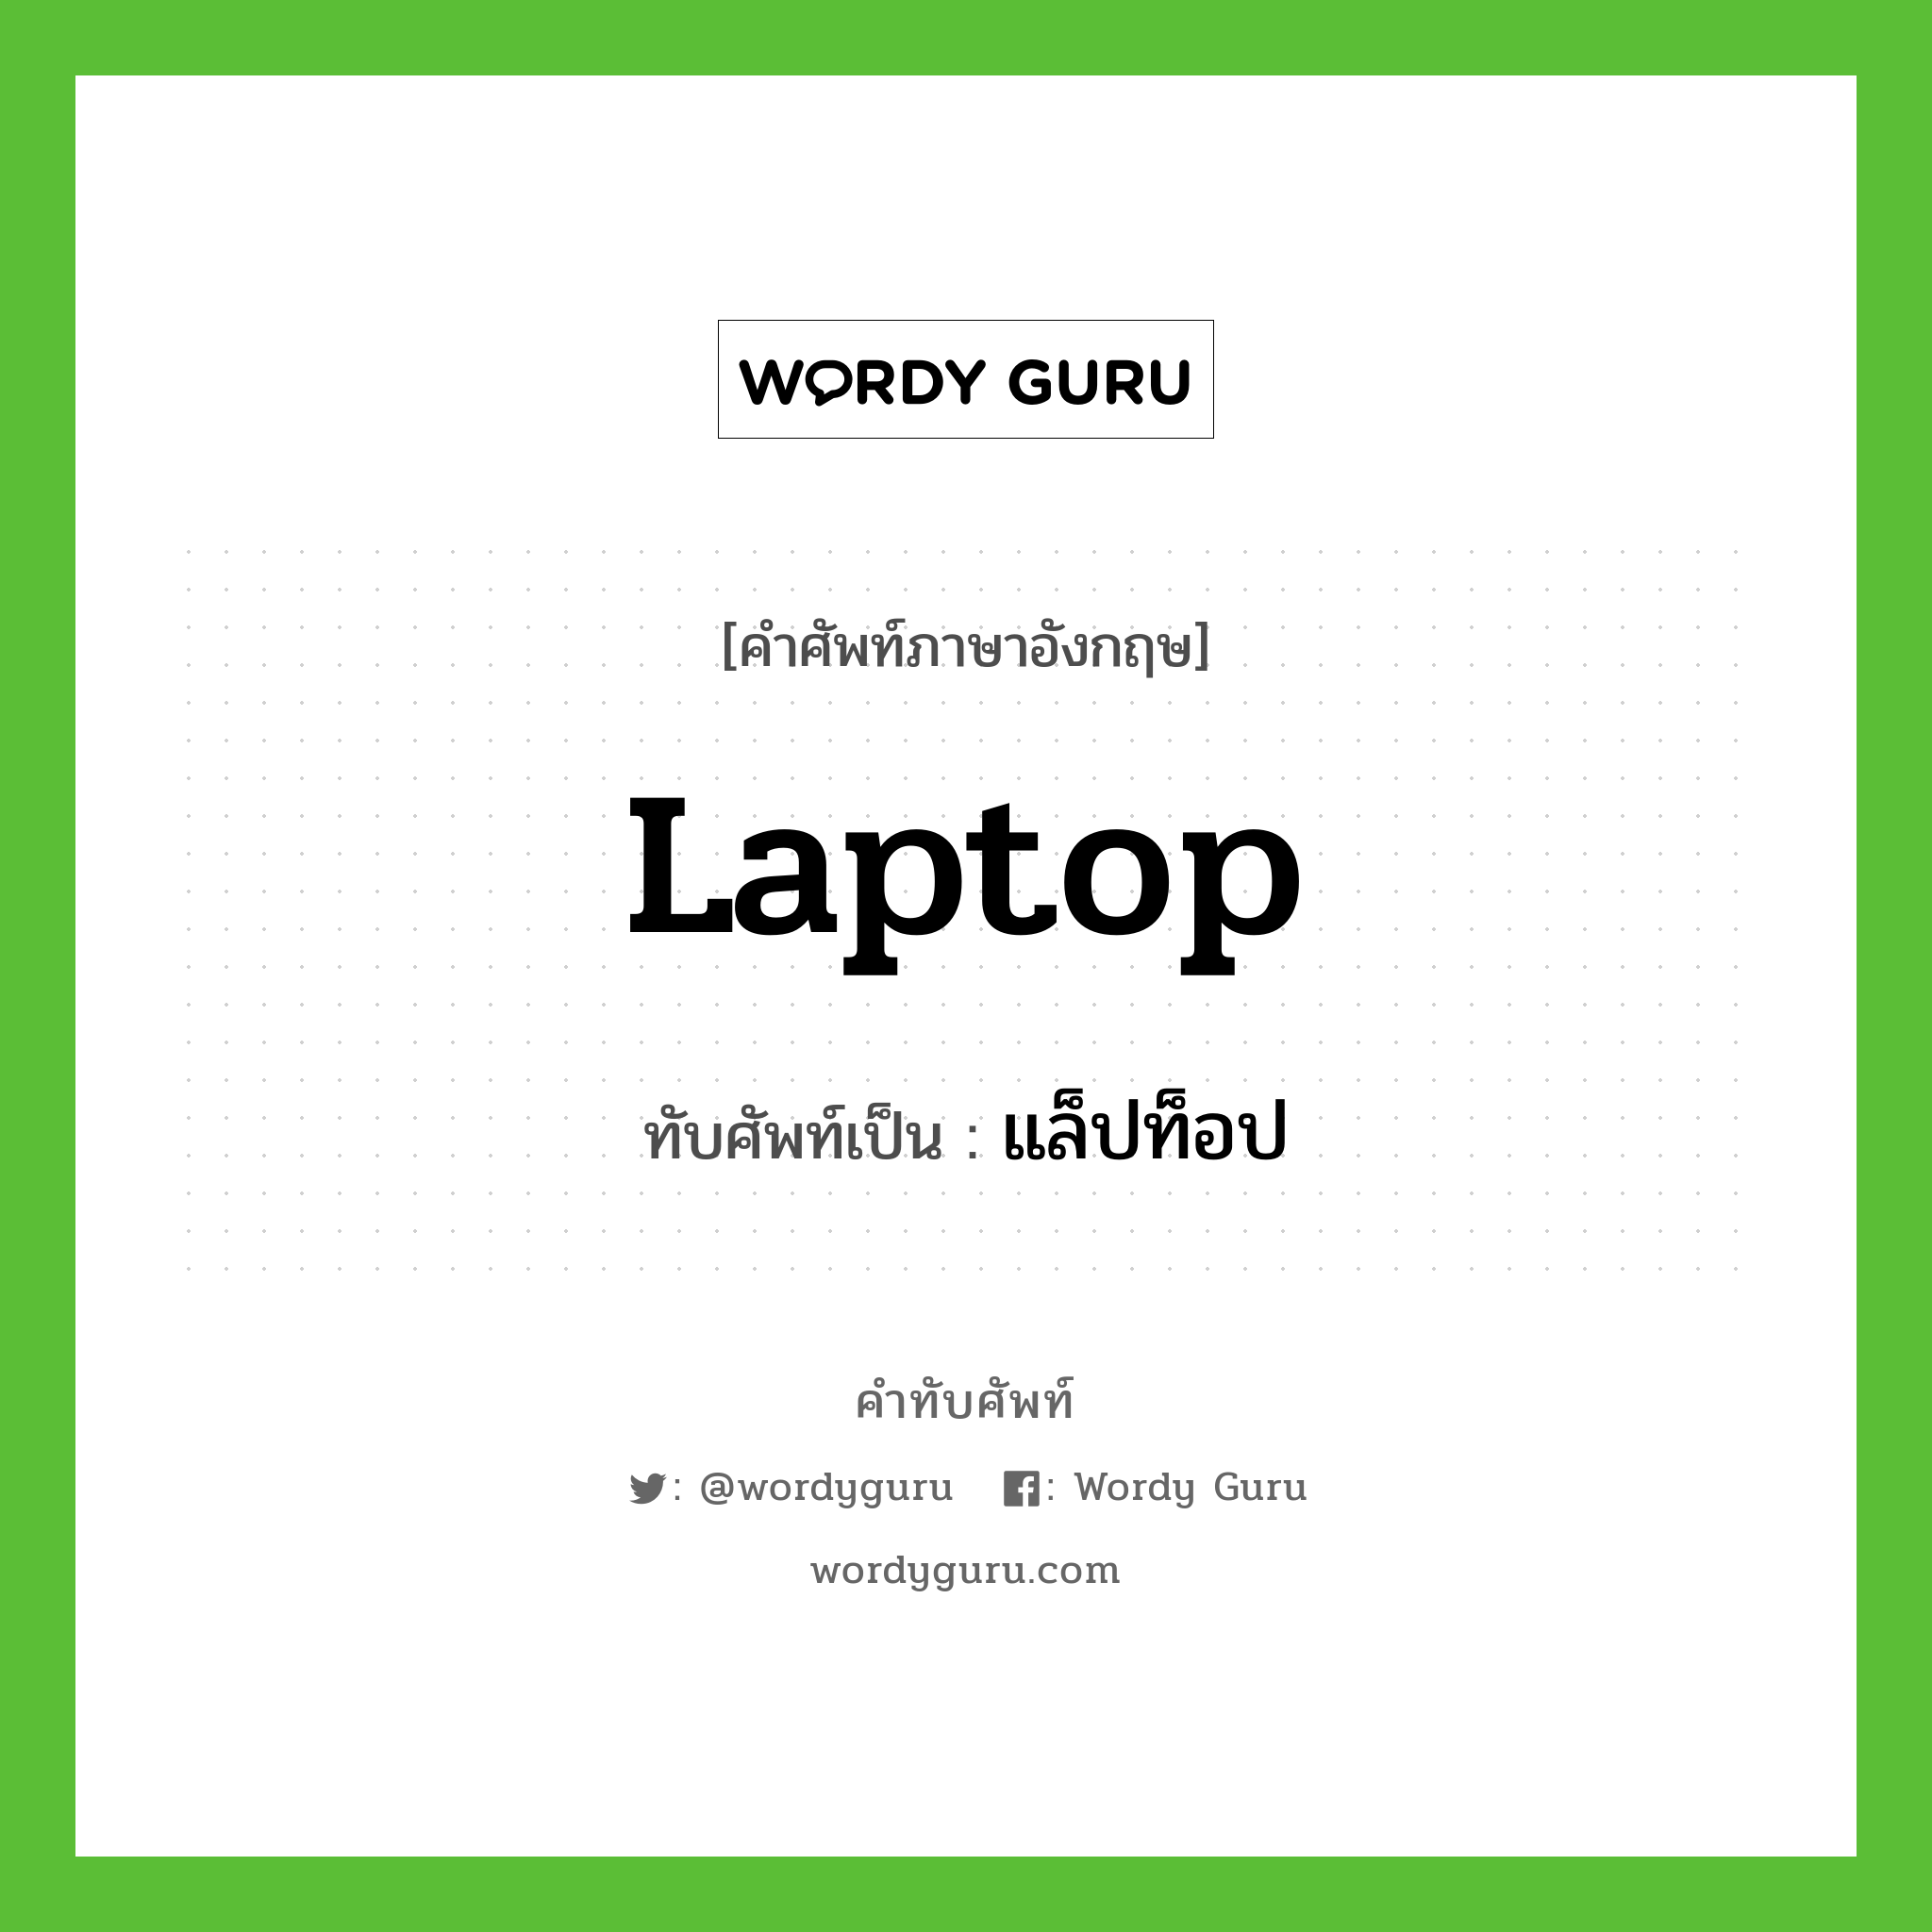 แล็ปท็อป เขียนอย่างไร?, คำศัพท์ภาษาอังกฤษ แล็ปท็อป ทับศัพท์เป็น laptop